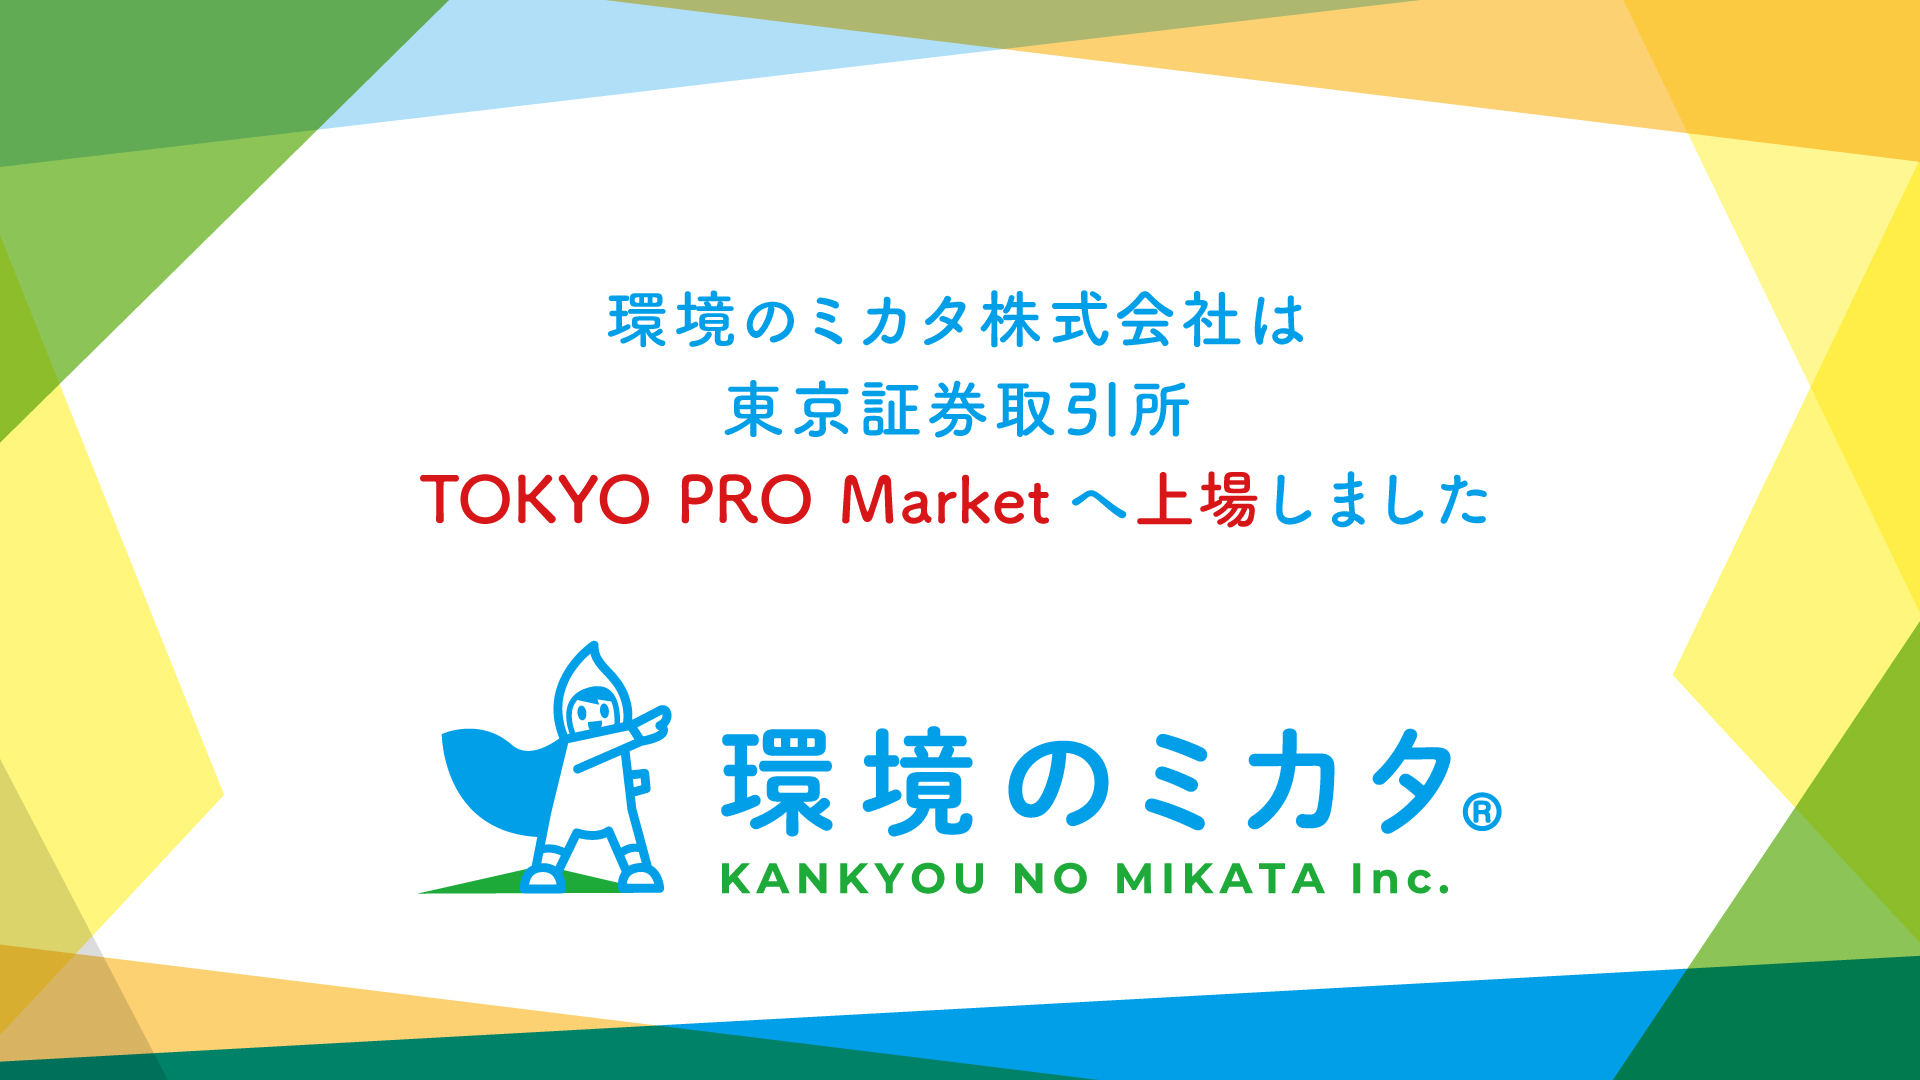 東京証券取引所 TOKYO PRO Market への株式上場のお知らせ